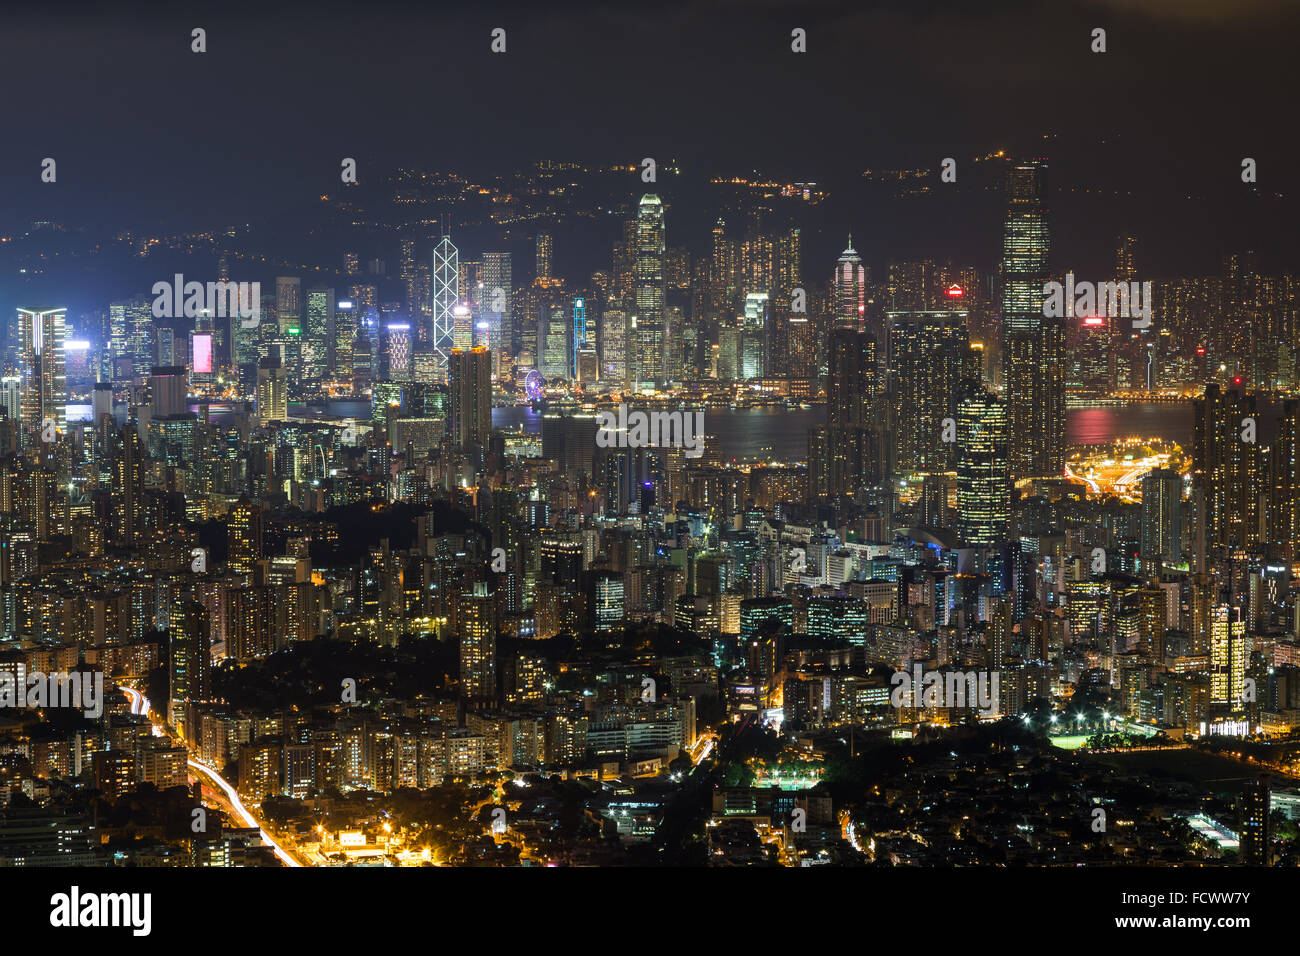 View of Kowloon and Hong Kong Island from above in Hong Kong, China, at night. Stock Photo